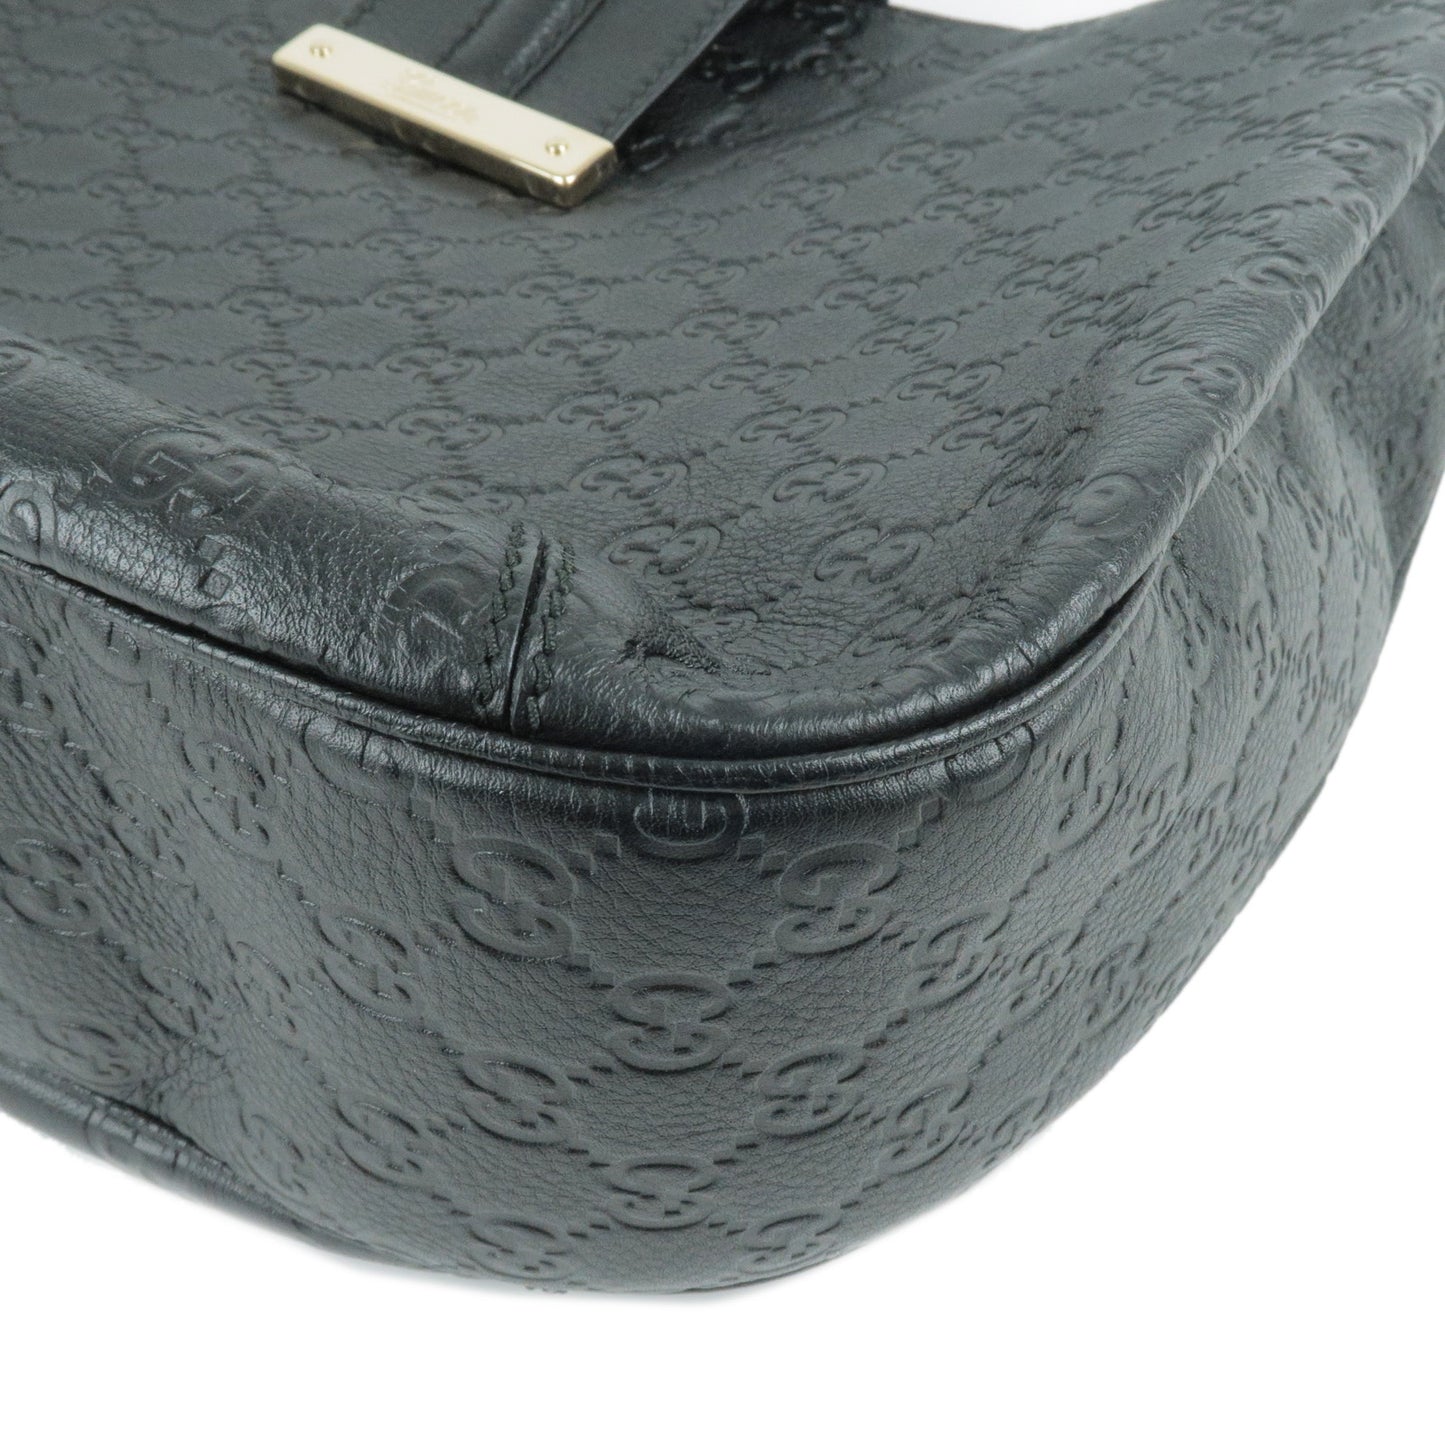 GUCCI Guccissima Leather Shoulder Bag Hand Bag Black 233604